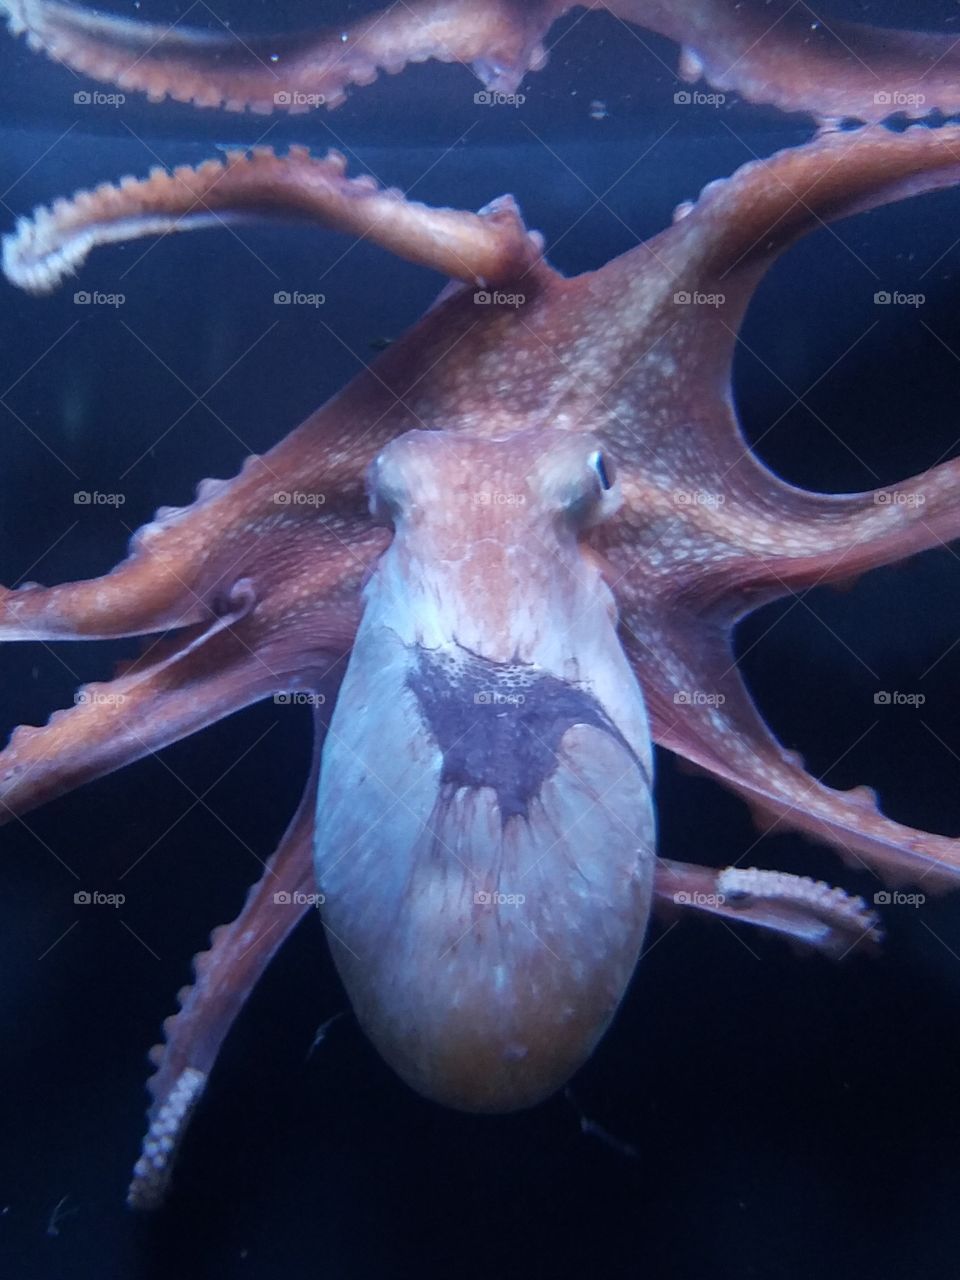 octopus at aquarium of the Pacific